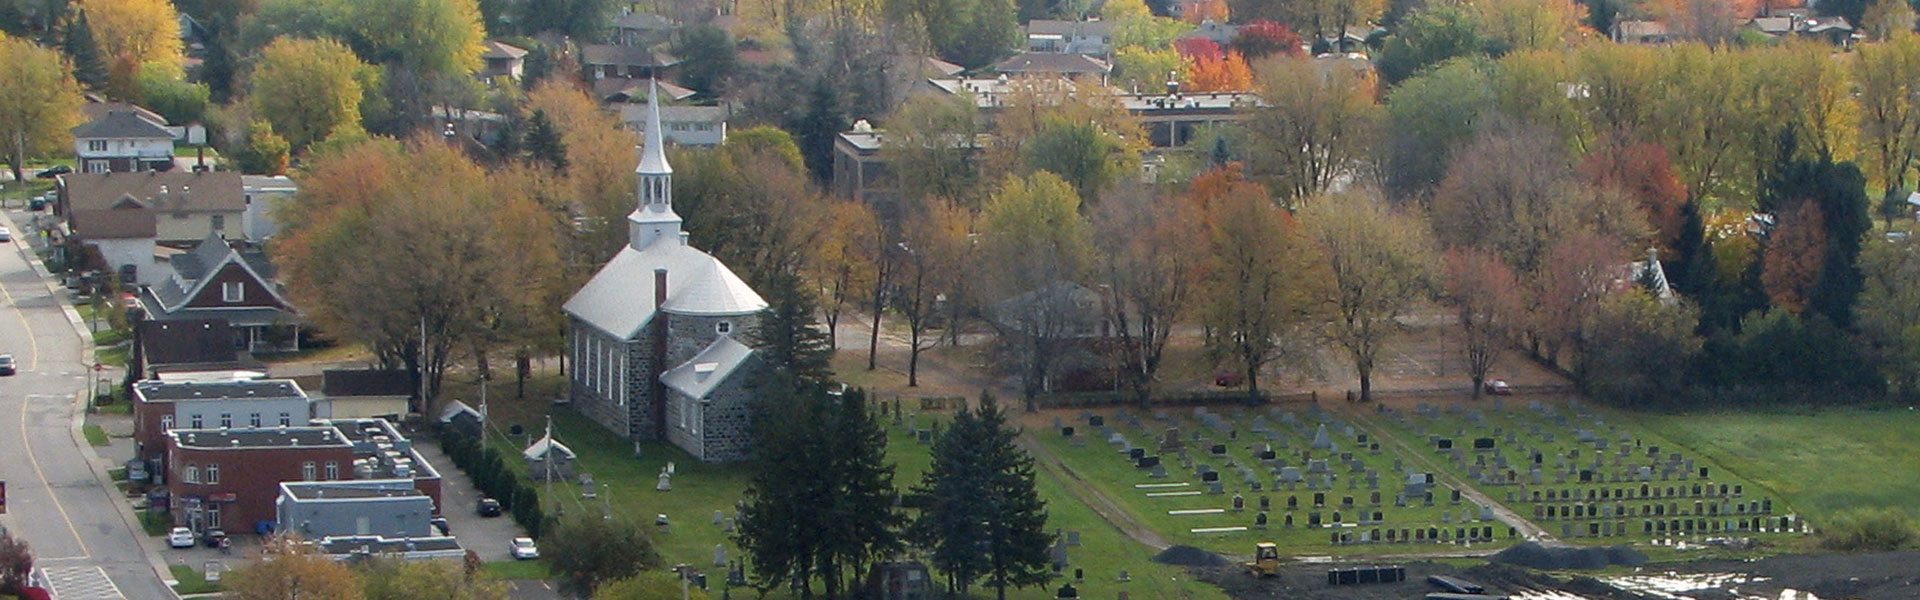 Vue aérienne de l'église et du cimetière